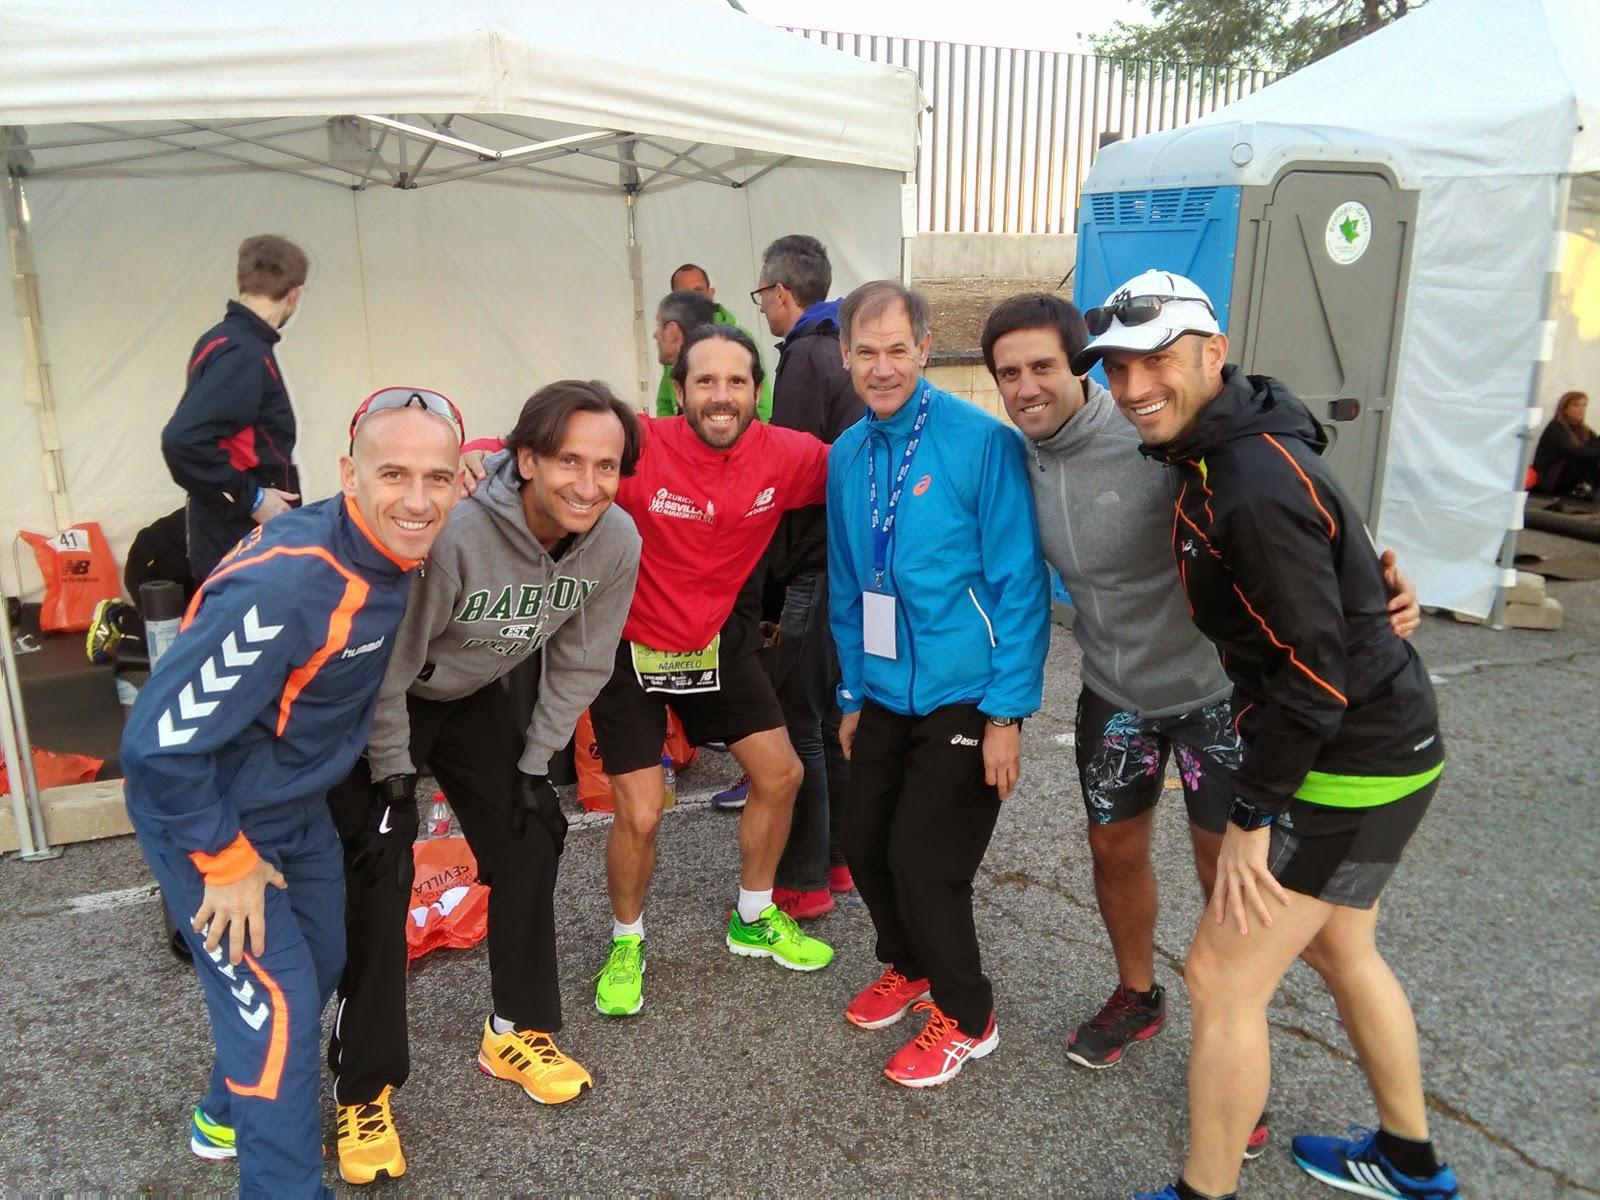 Voluntario (otra vez) en el Maratón de Sevilla